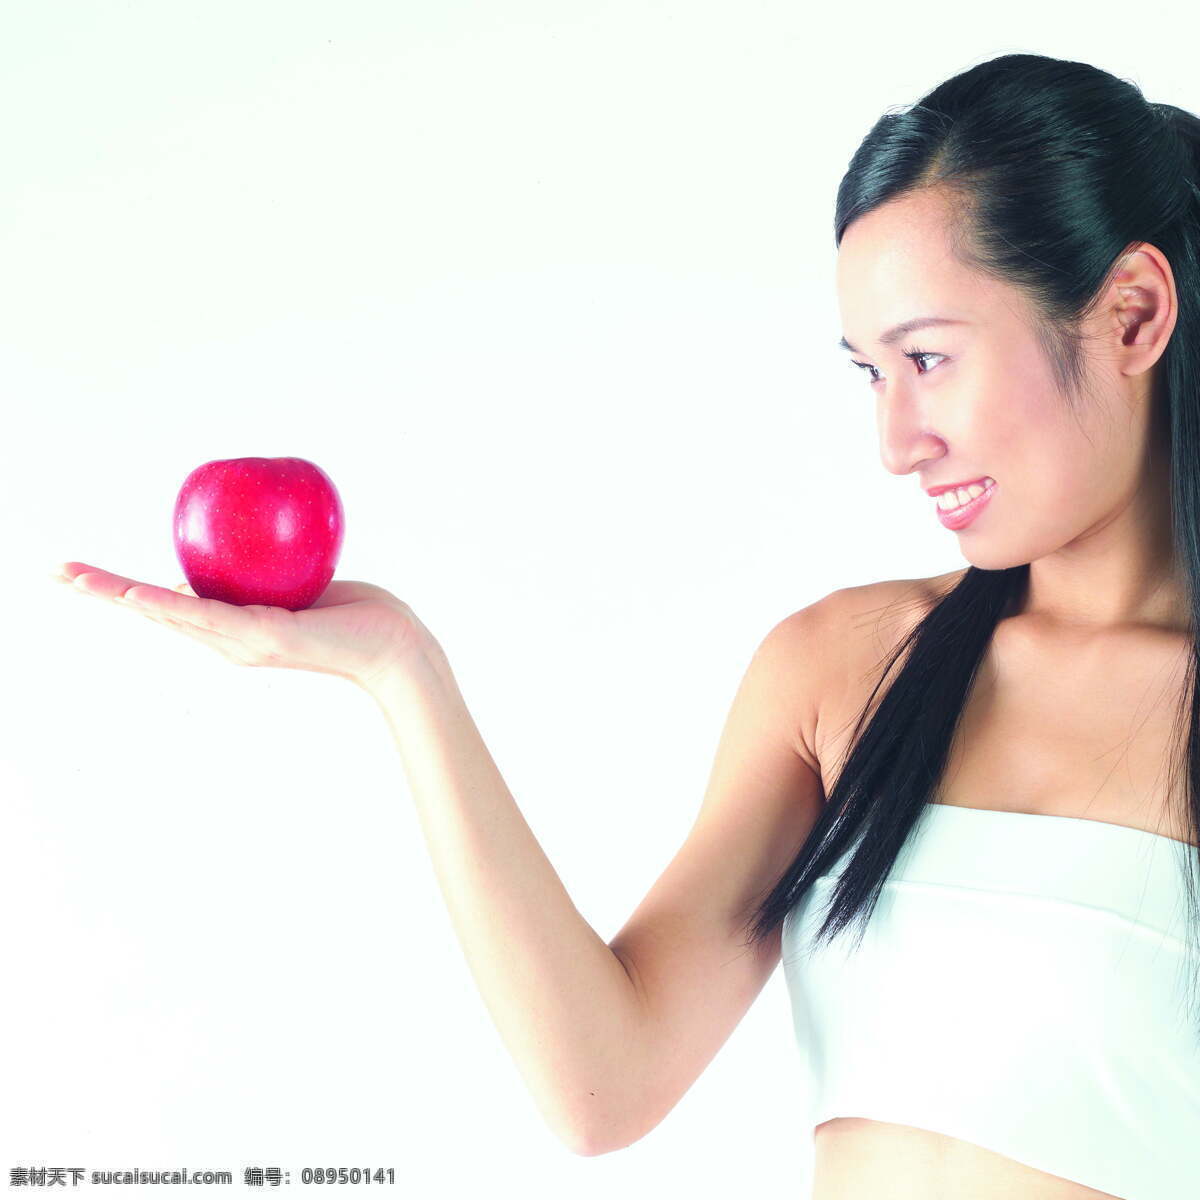 瘦身 美女图片 水疗 美容 养生 护肤 spa 女性 女人 美体 苹果 减肥 人物图片